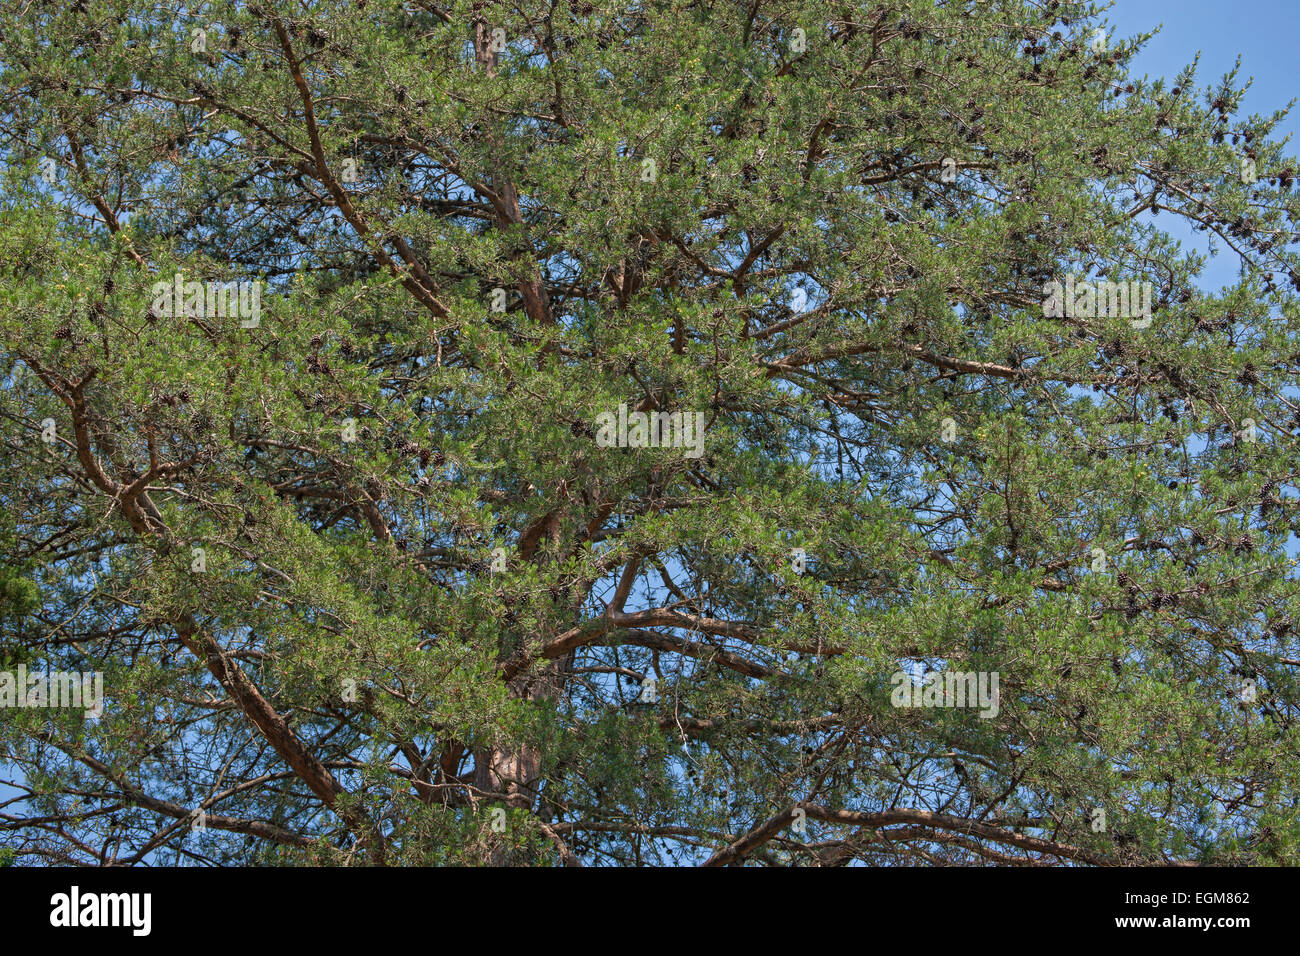 Virginia pine (Pinus virginiana). Stock Photo